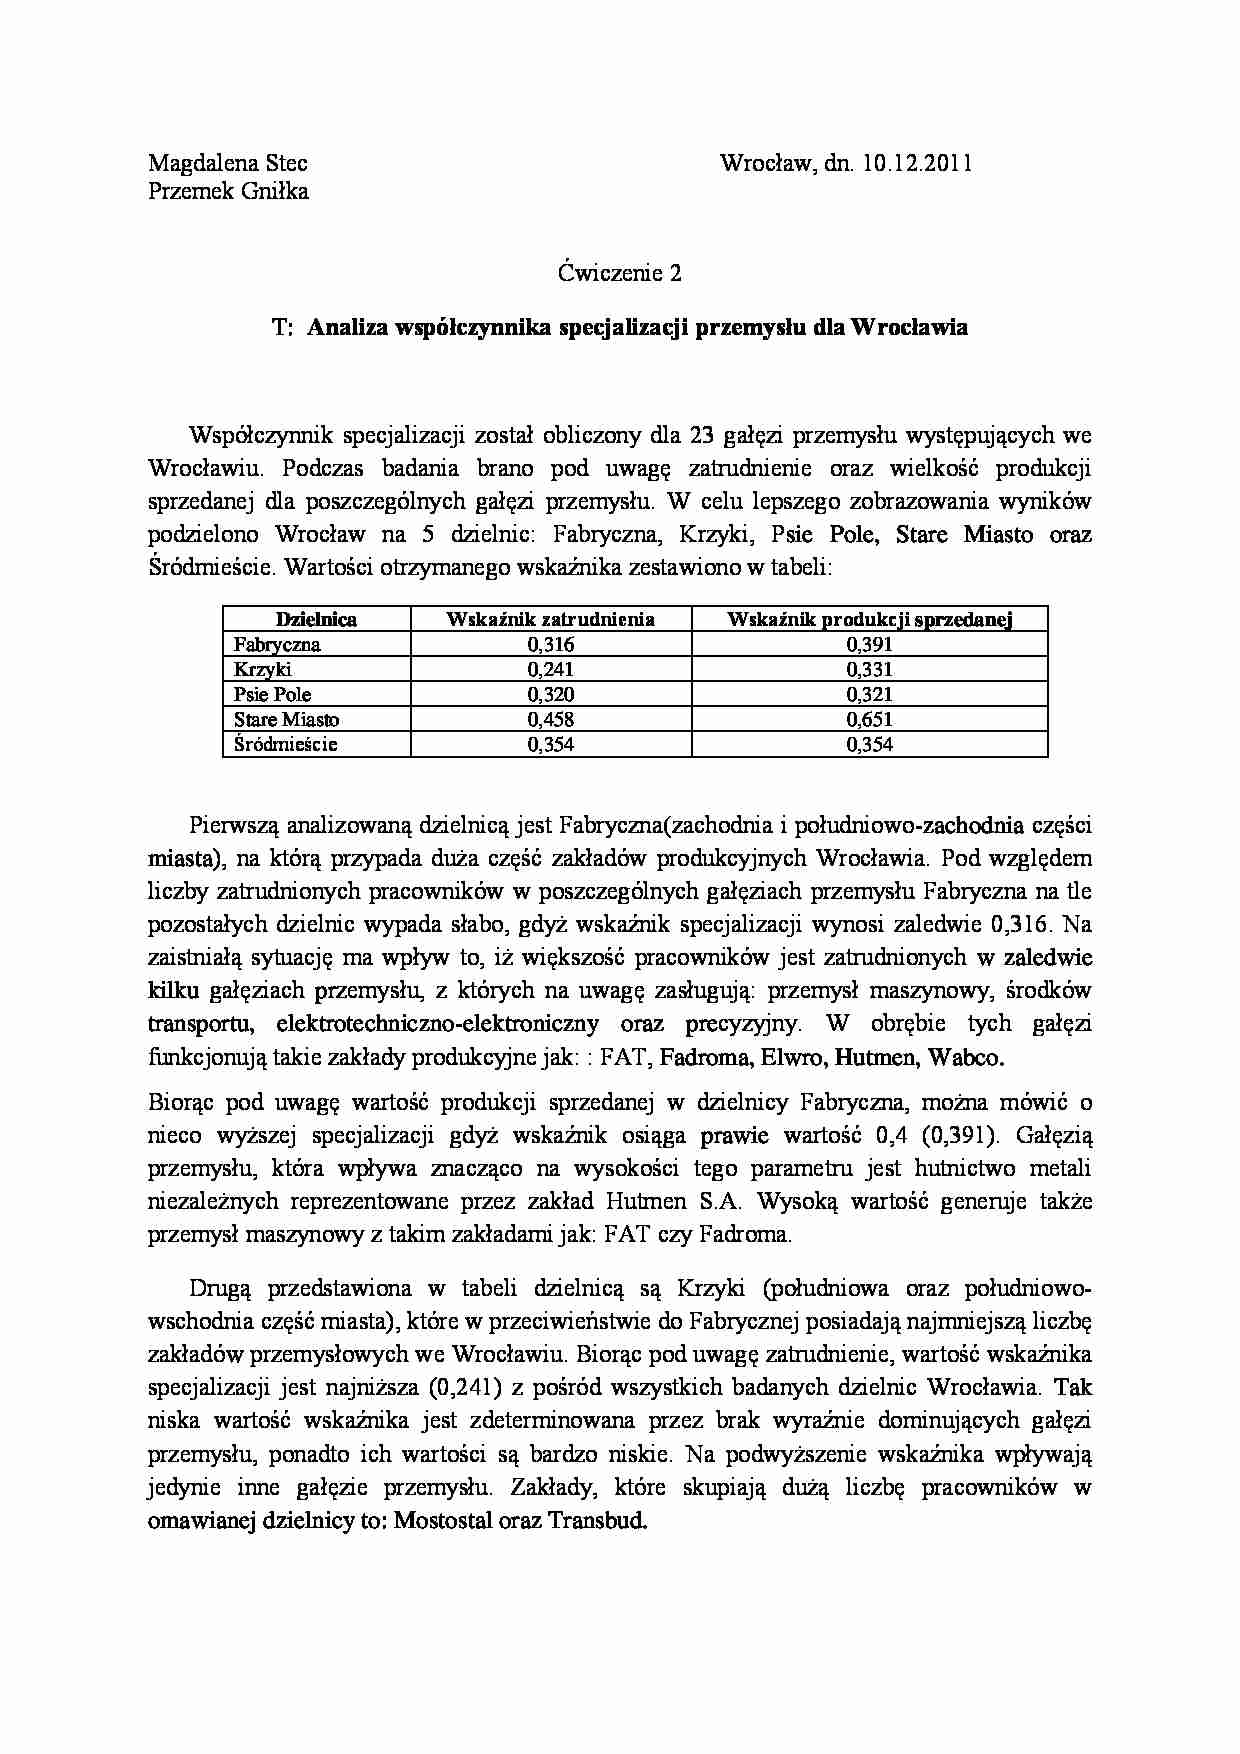 Analiza współczynnika specjalizacji przemysłu dla Wrocławia - strona 1